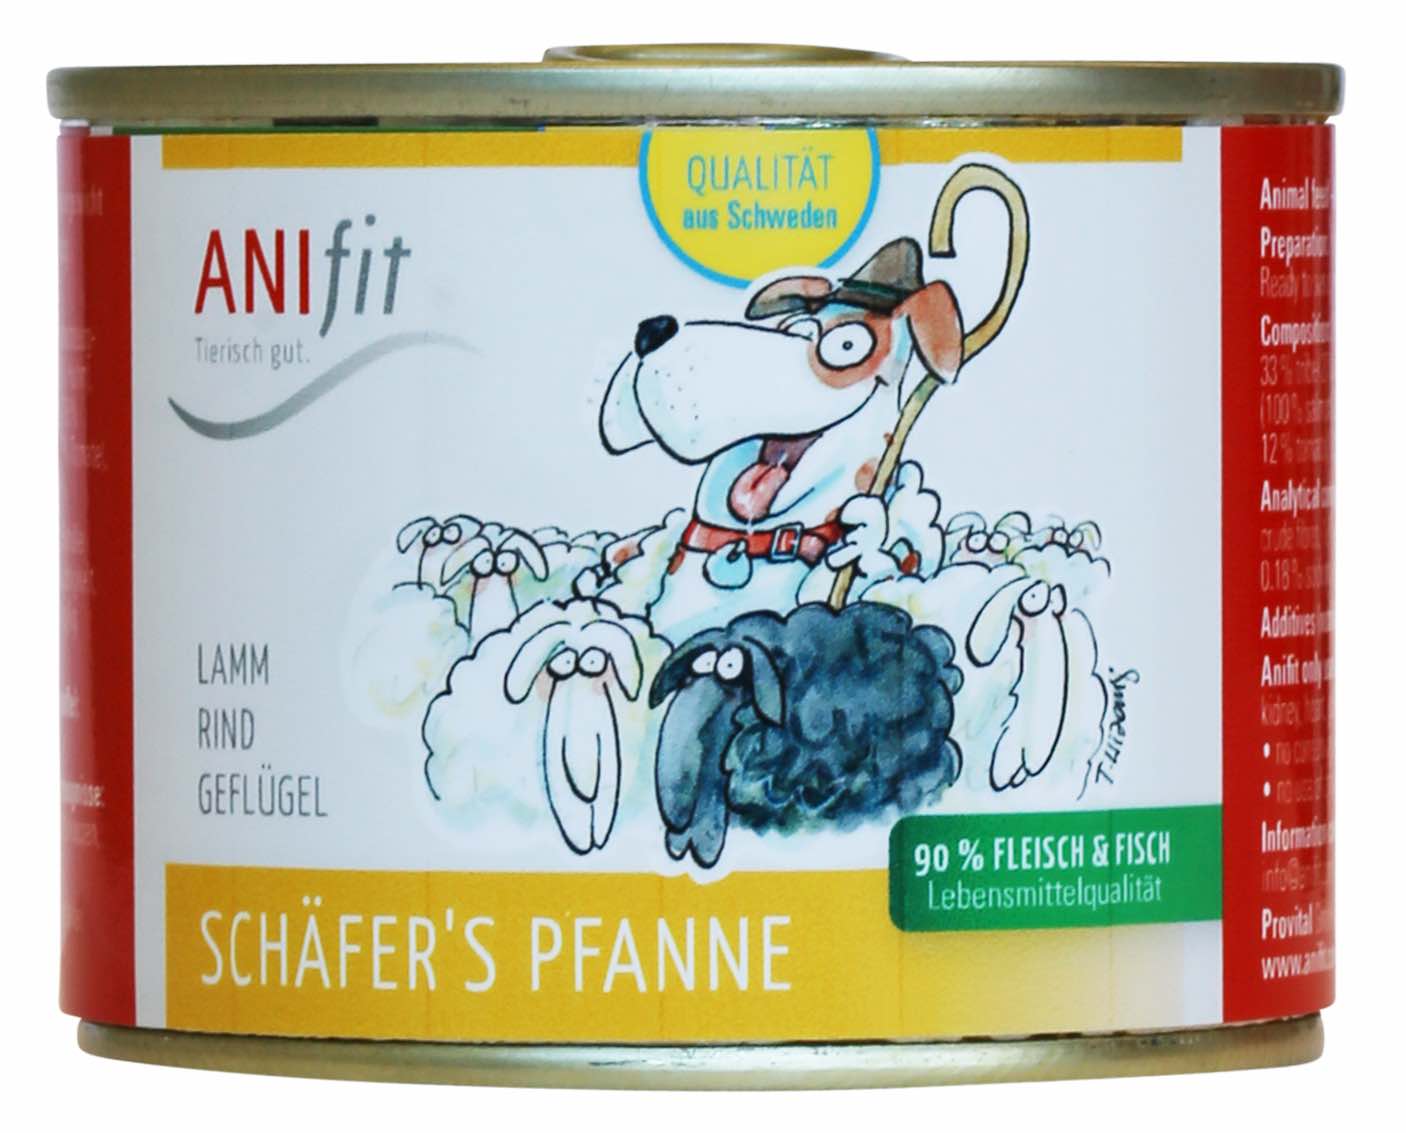 Anifit Hundefutter Erfahrungen Schaefers Pfanne